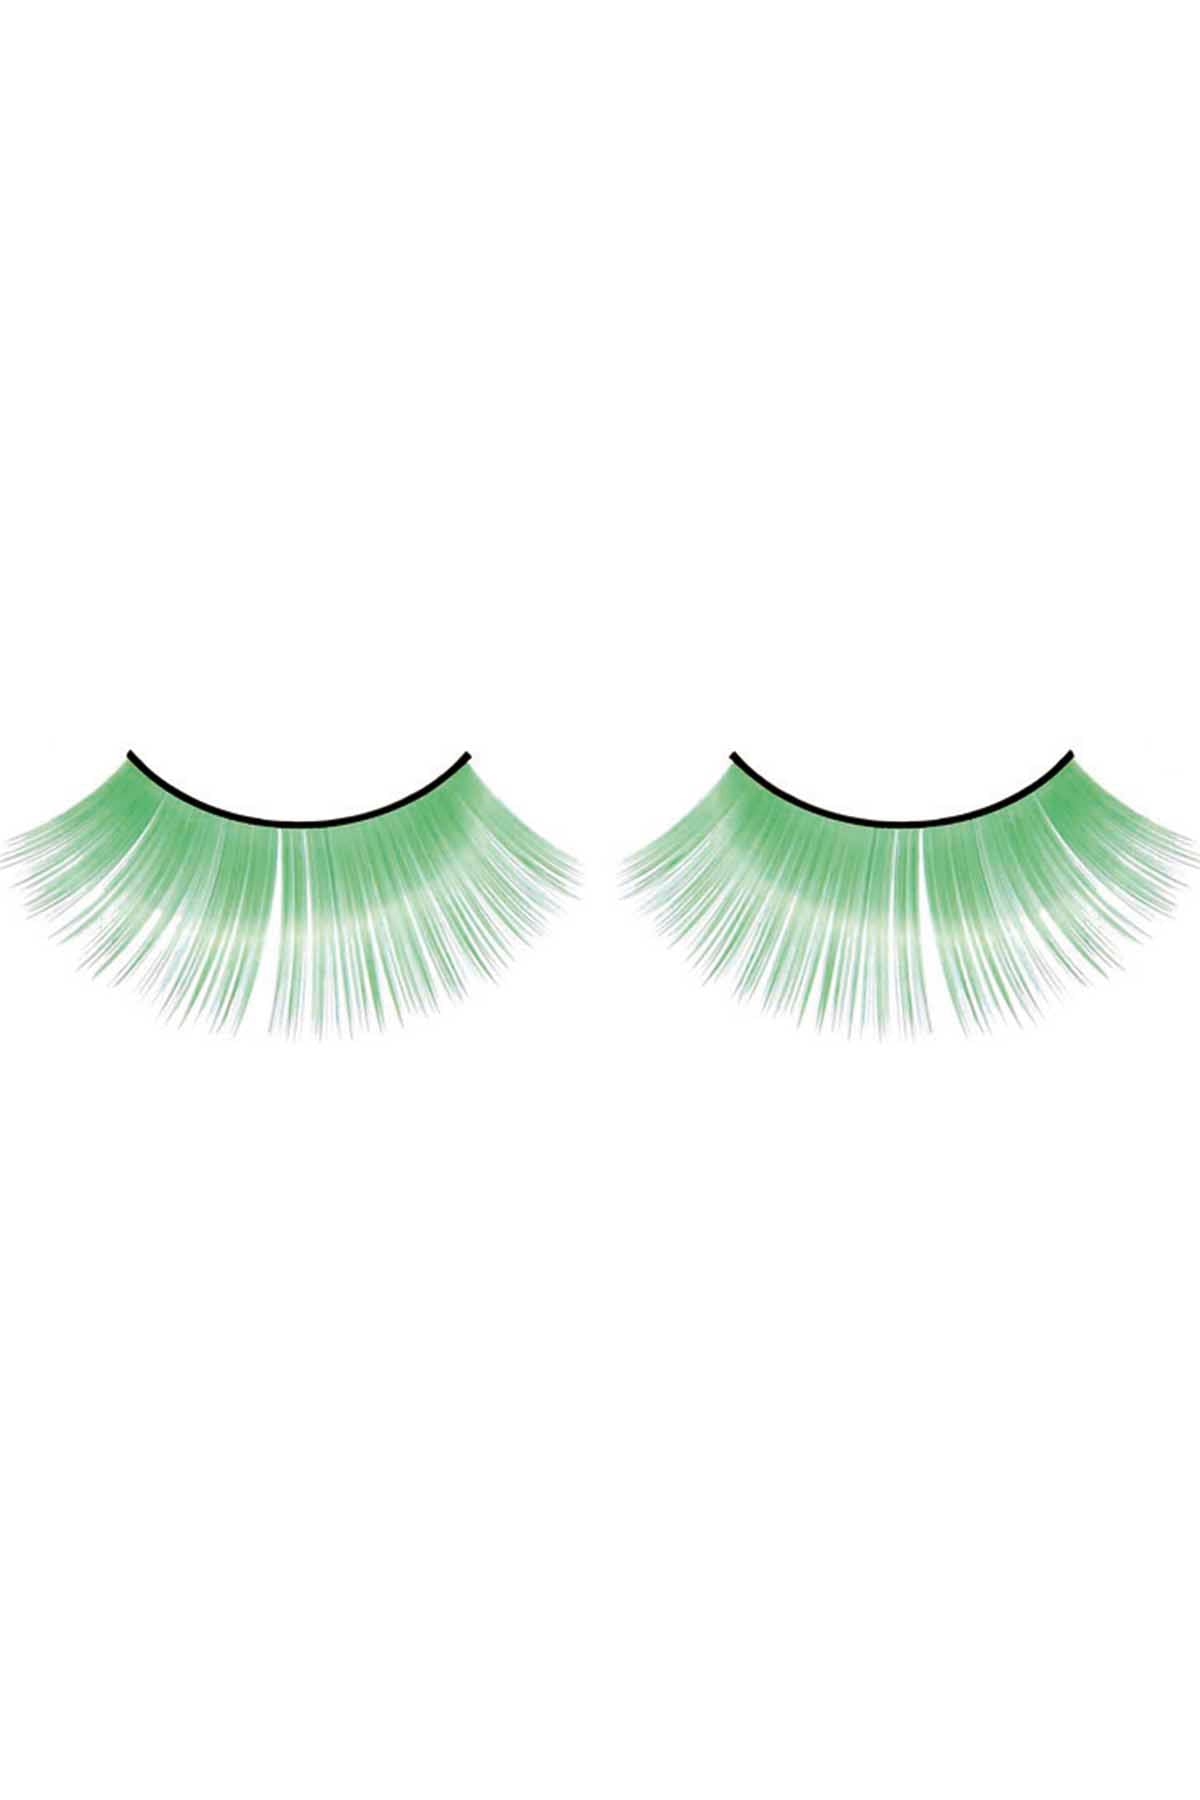 Baci Green Magic Colors Eyelashes